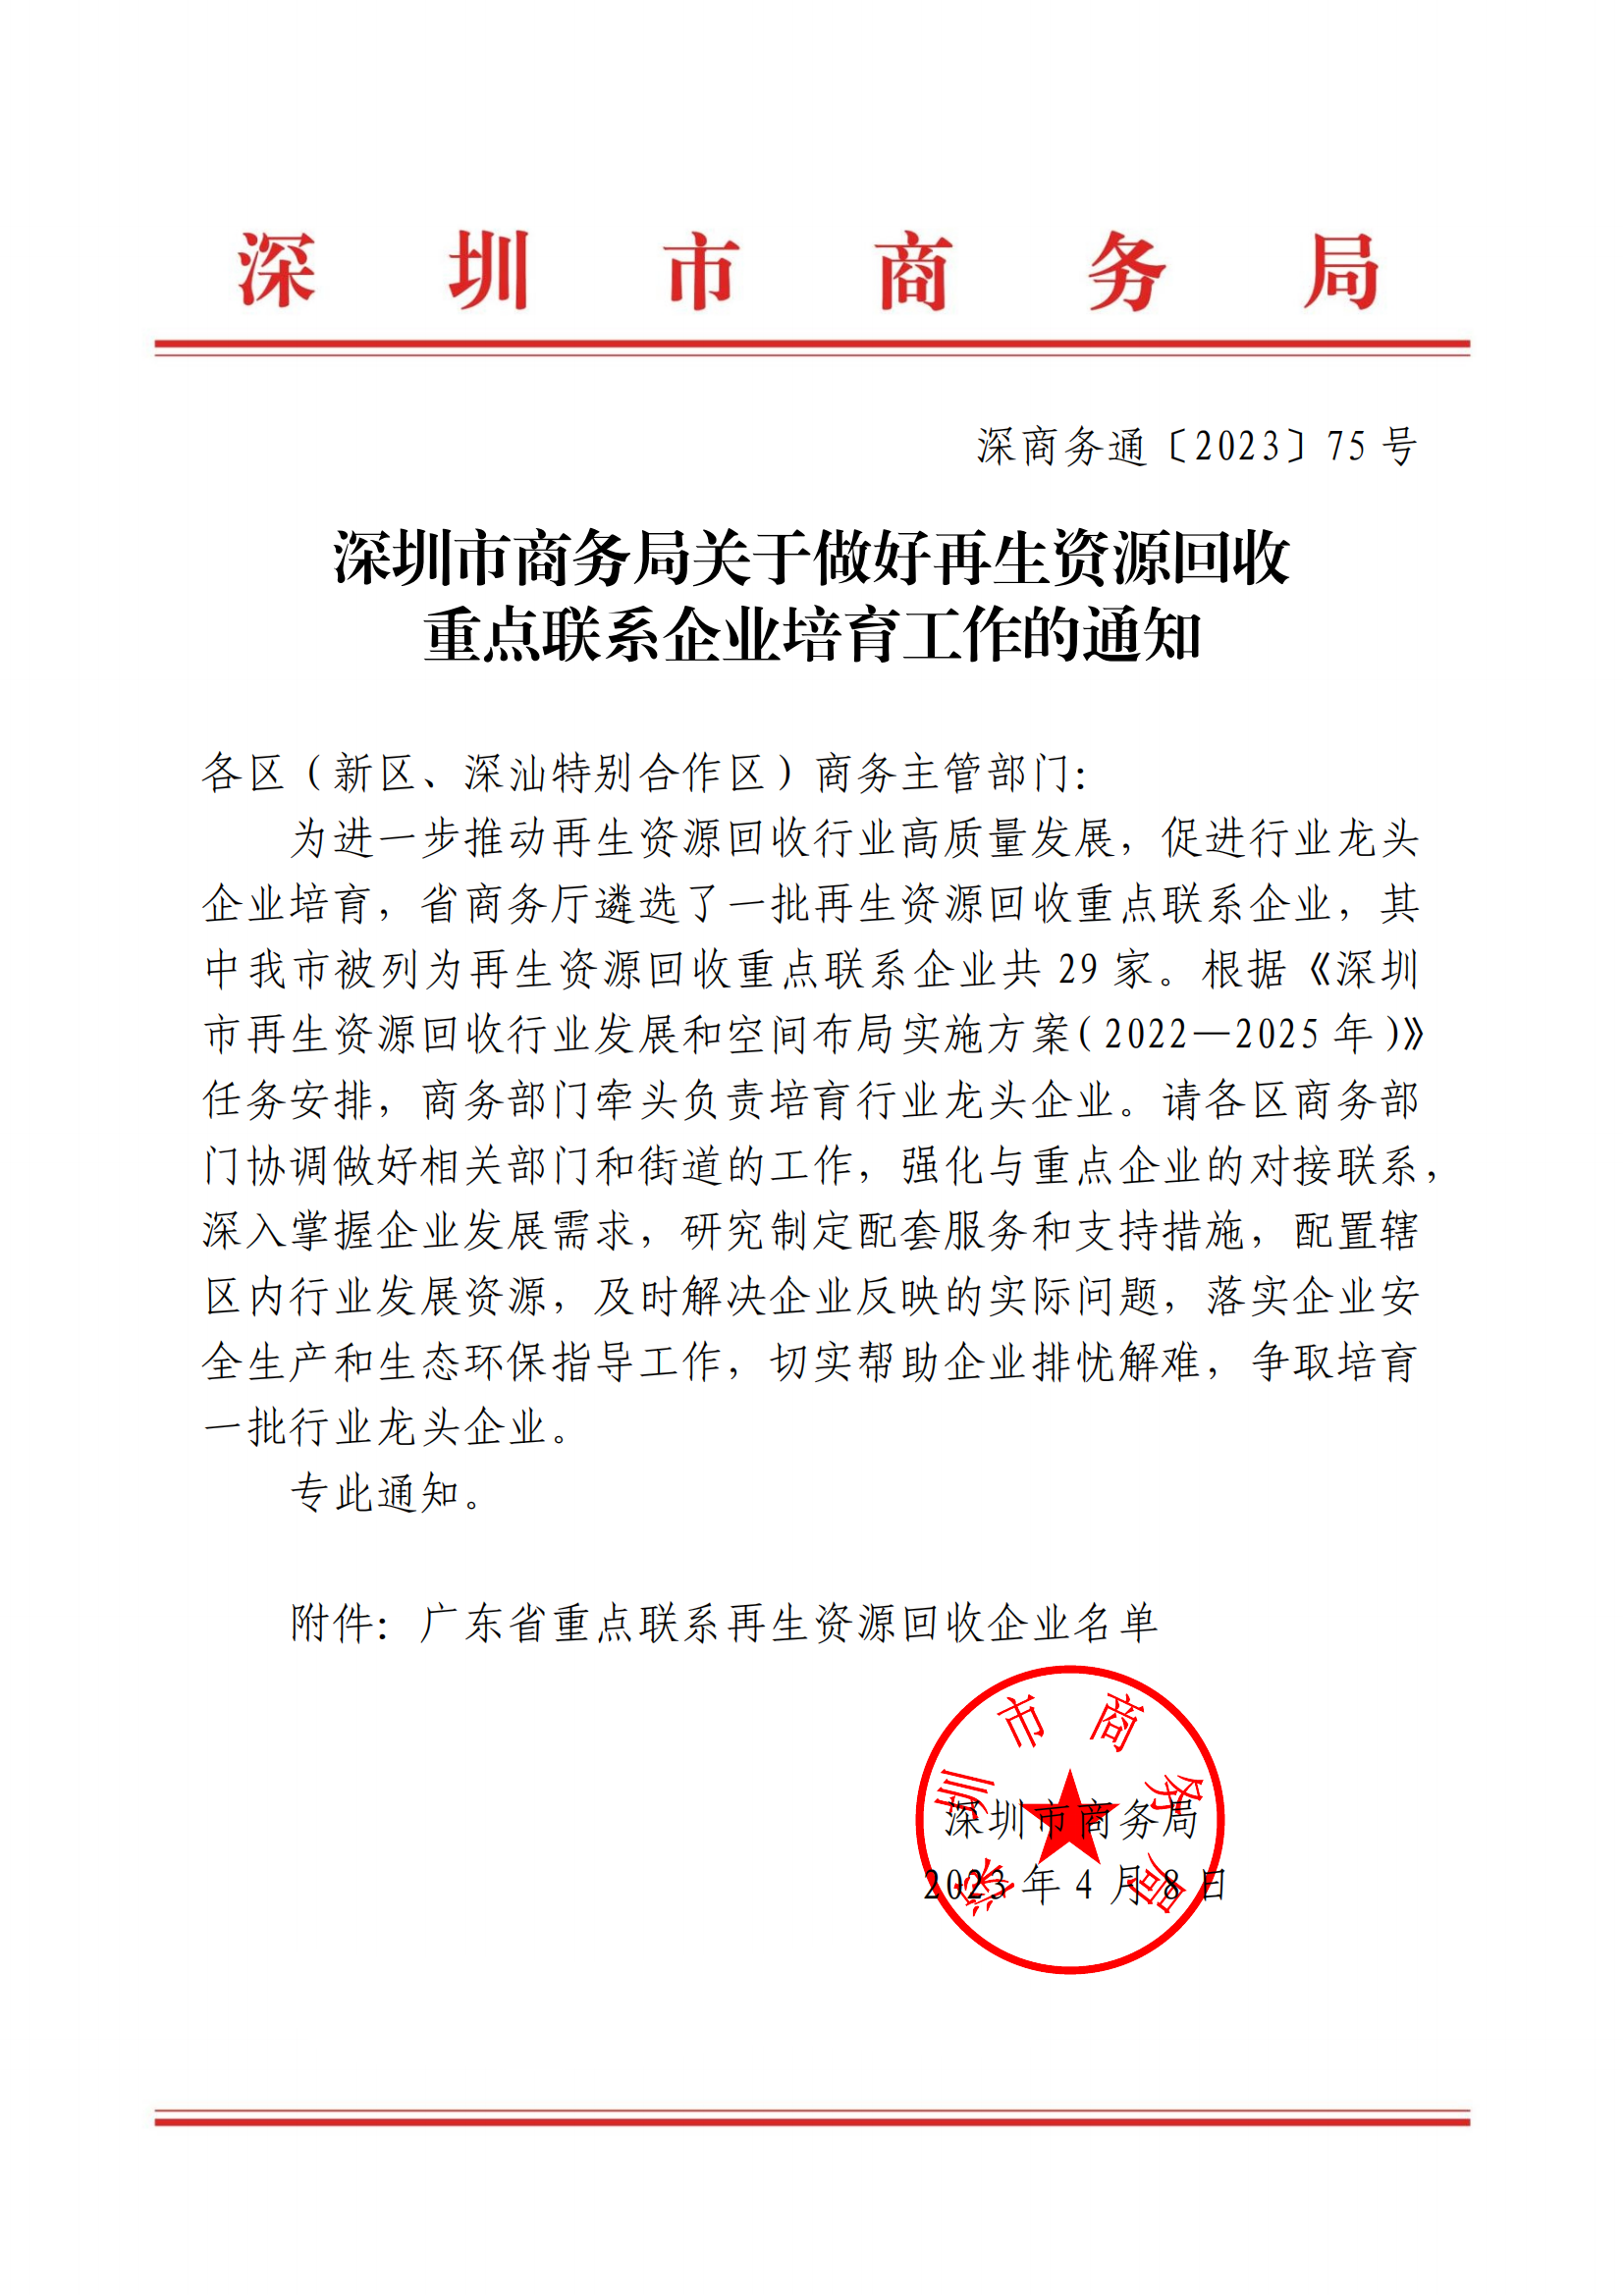 爱博绿被列入“广东省再生资源行业龙头企业”培育对象